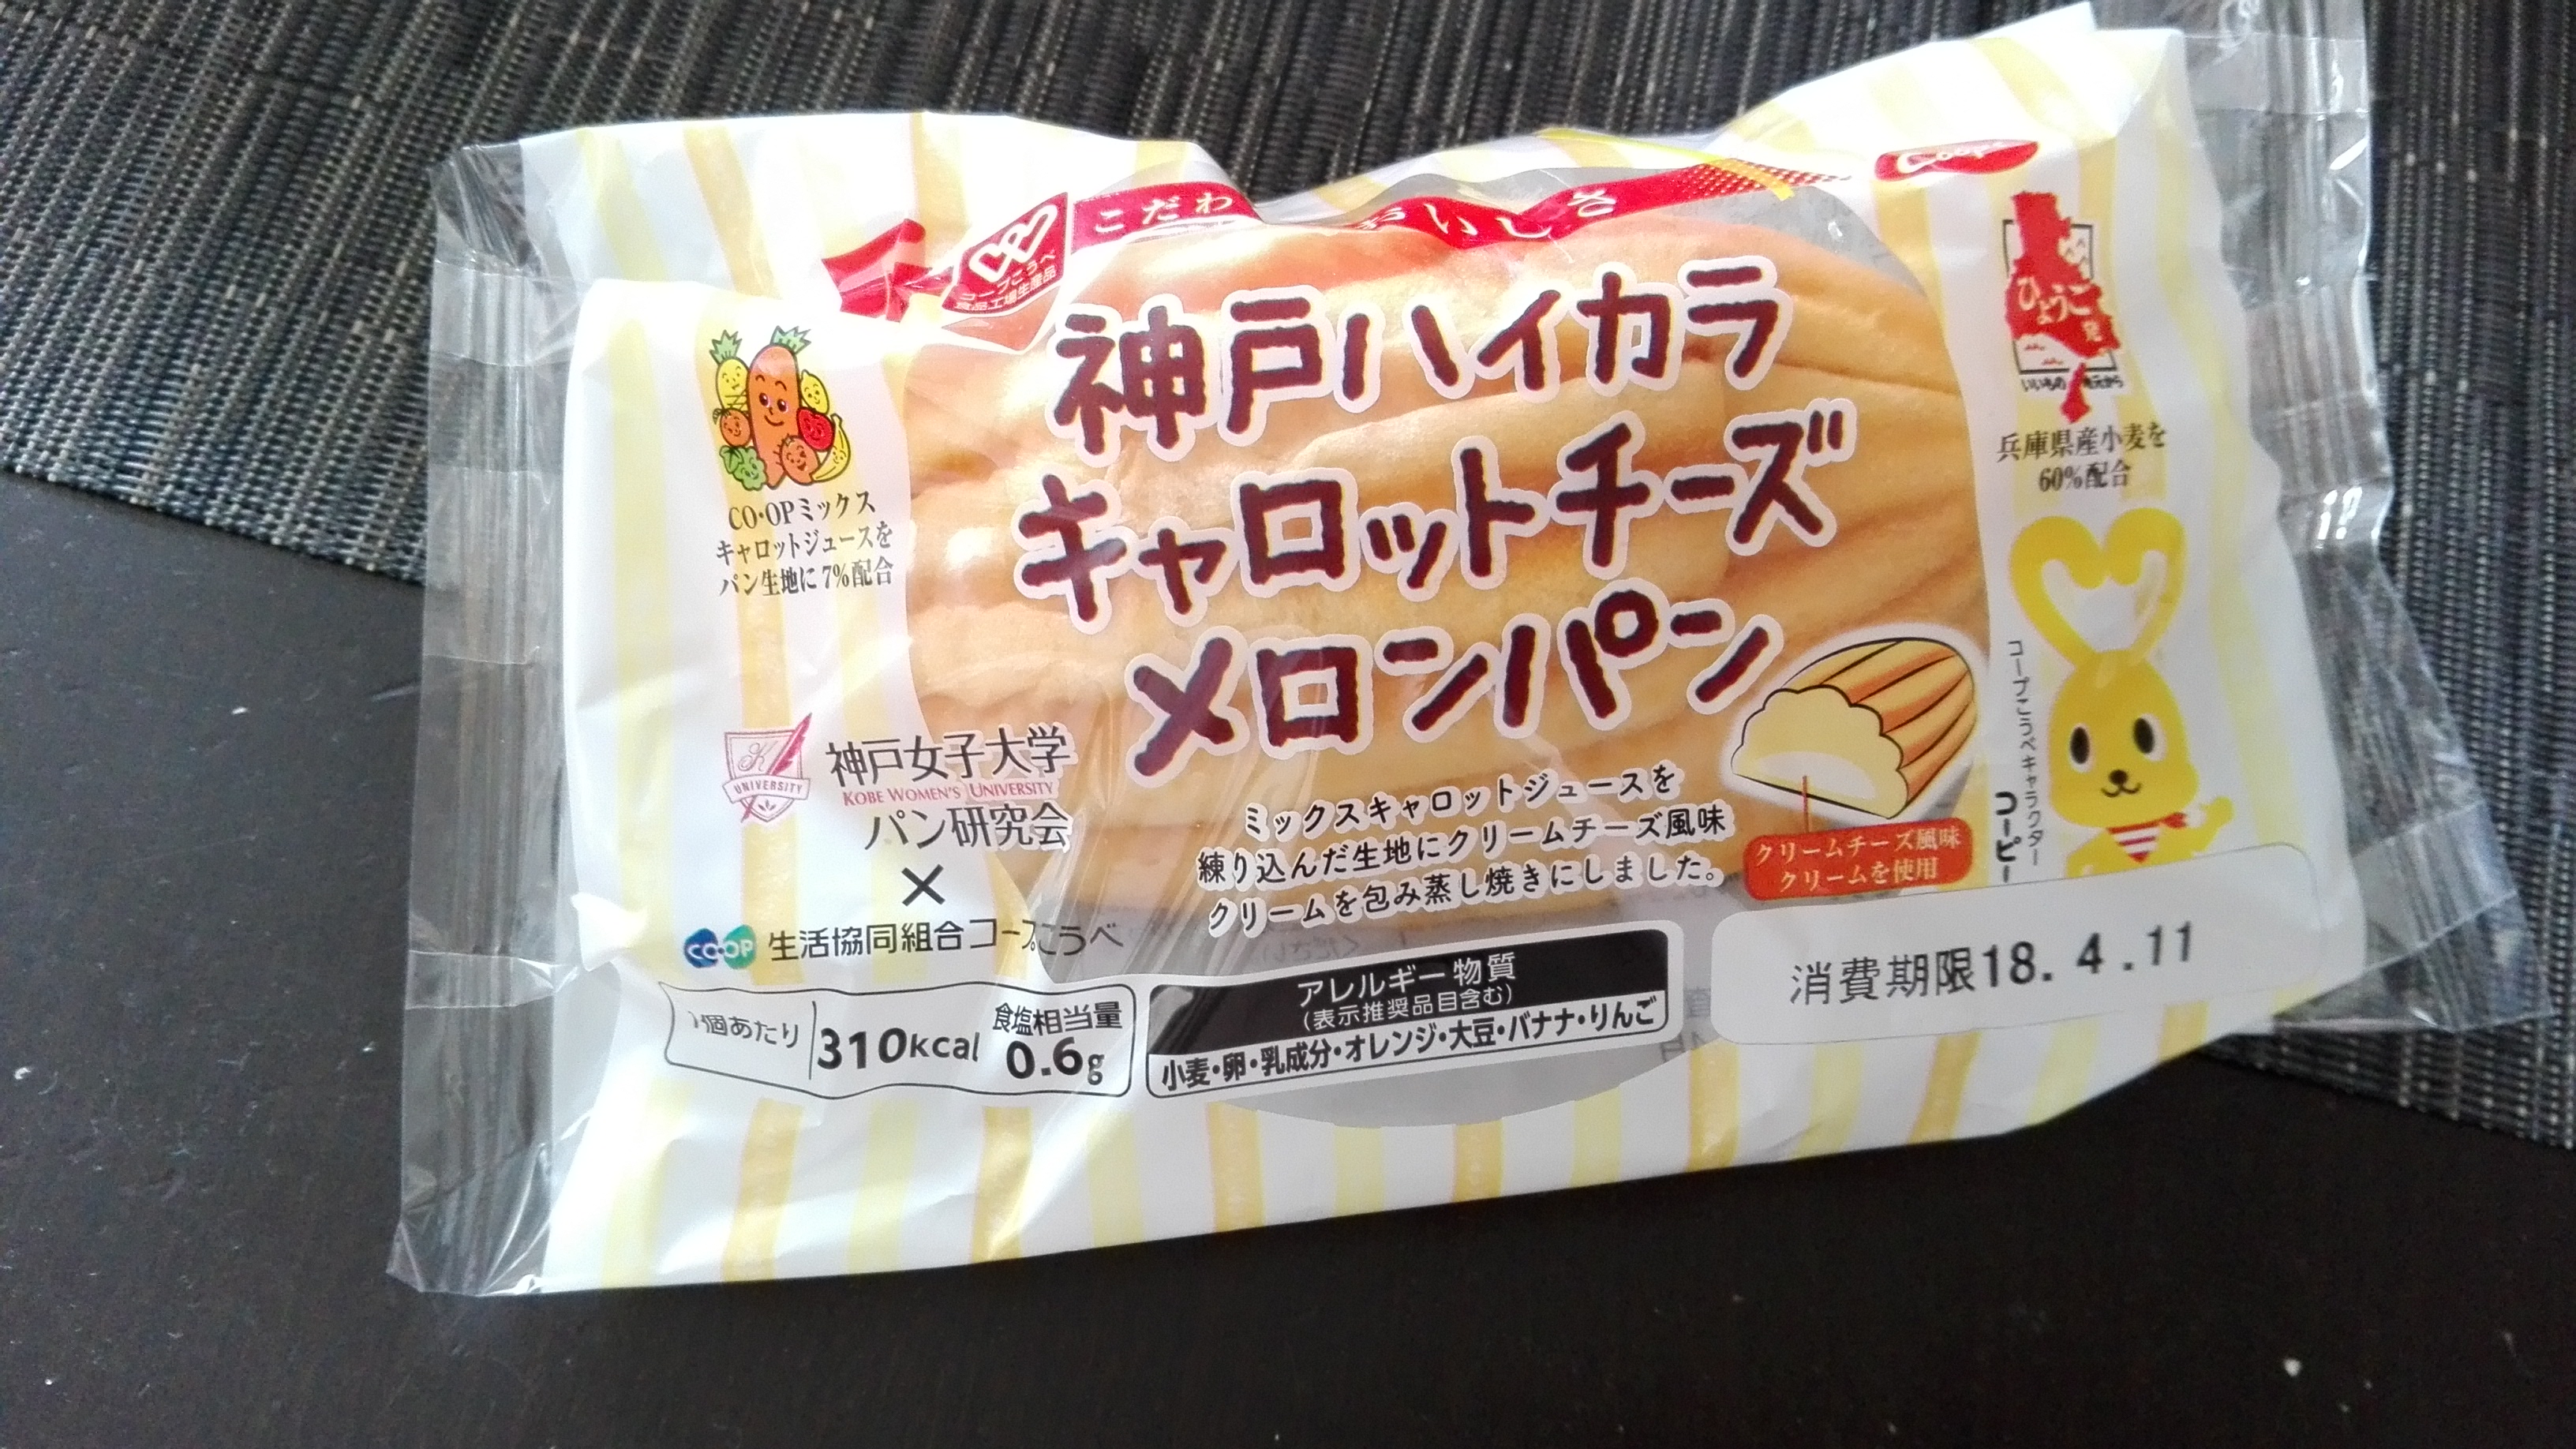 実食 期間限定の神戸ハイカラメロンパンキャロットチーズをコープ委員で試食した感想 ベイビーカフェ ママのための地域コミュニティ